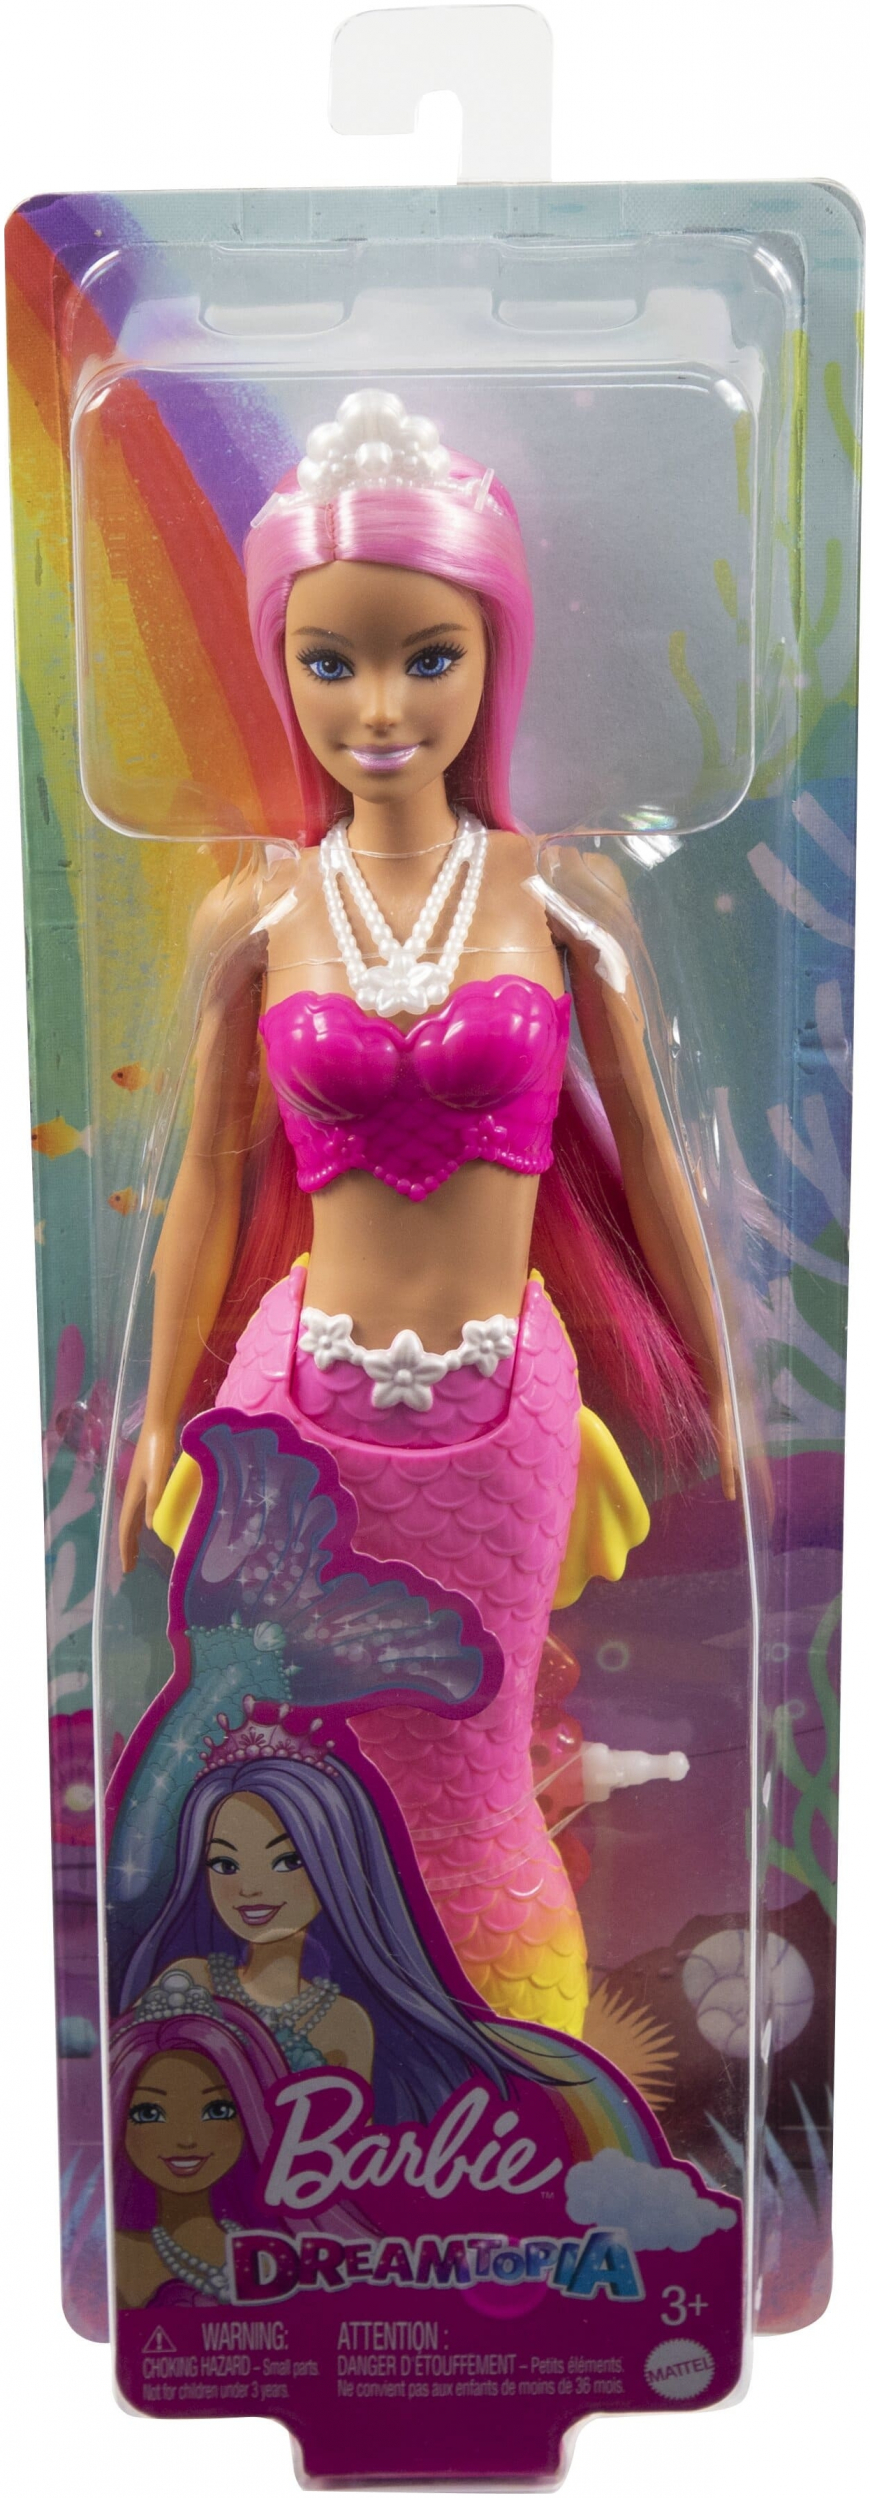 Barbie Dreamtopia Mermaid doll HGR11